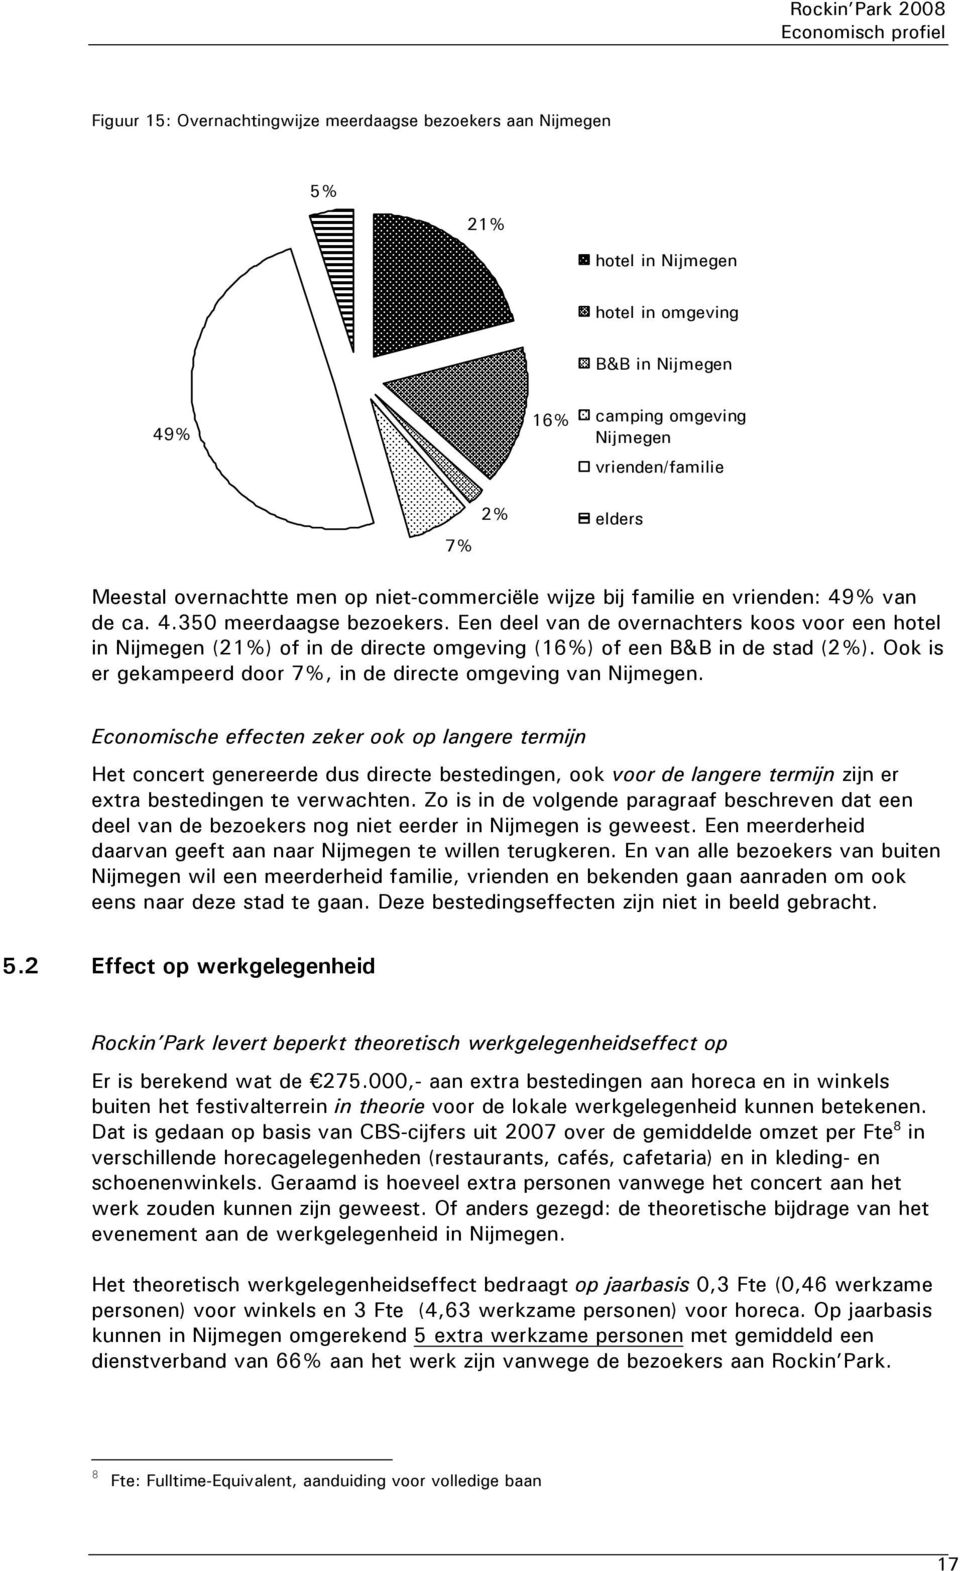 Een deel van de overnachters koos voor een hotel in Nijmegen (21%) of in de directe omgeving (16%) of een B&B in de stad (2%). Ook is er gekampeerd door 7%, in de directe omgeving van Nijmegen.